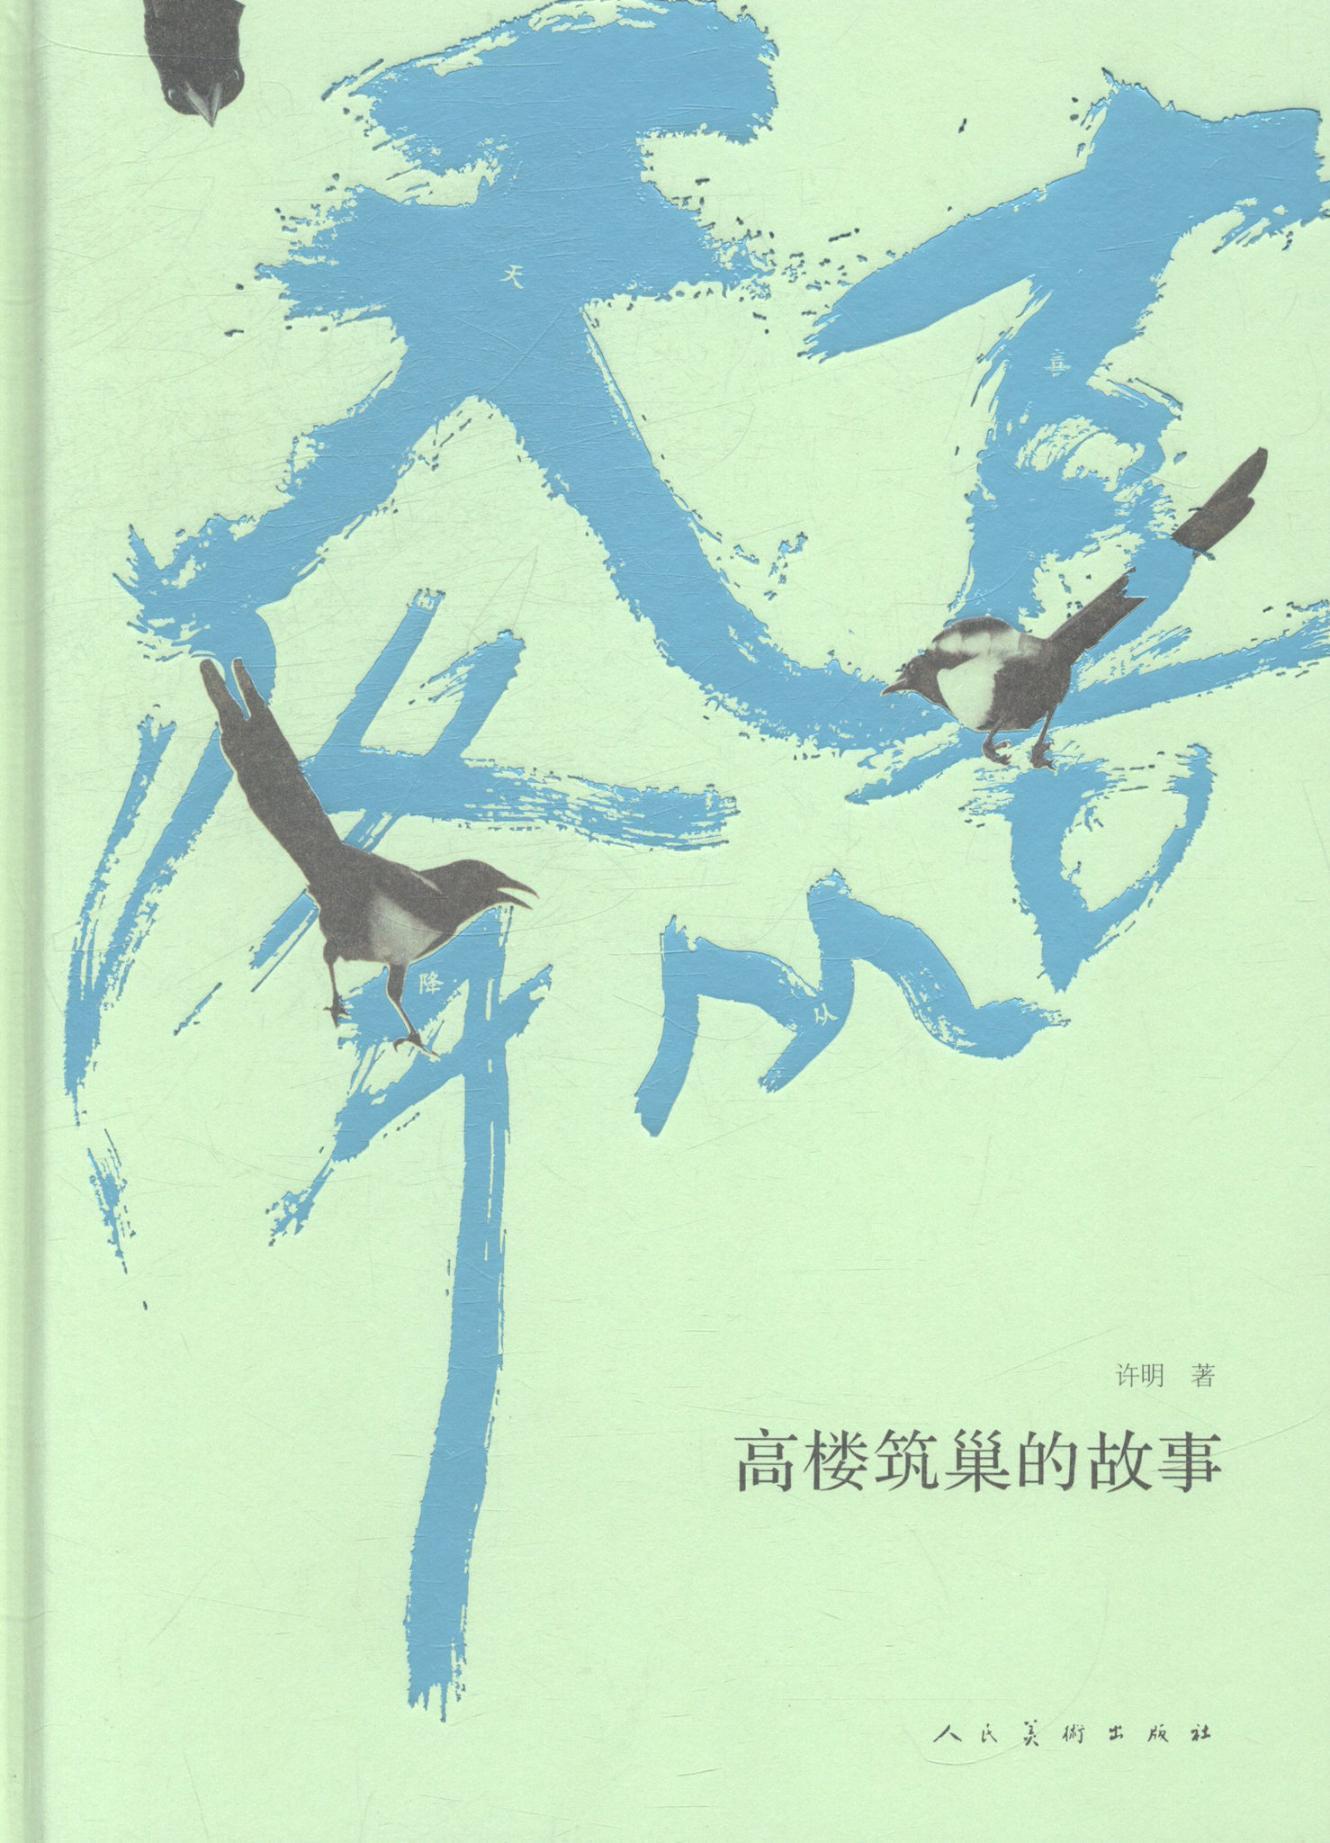 书籍正版 喜从天降:高楼筑巢的故事 许明 人民社 动漫与绘本 9787102068107